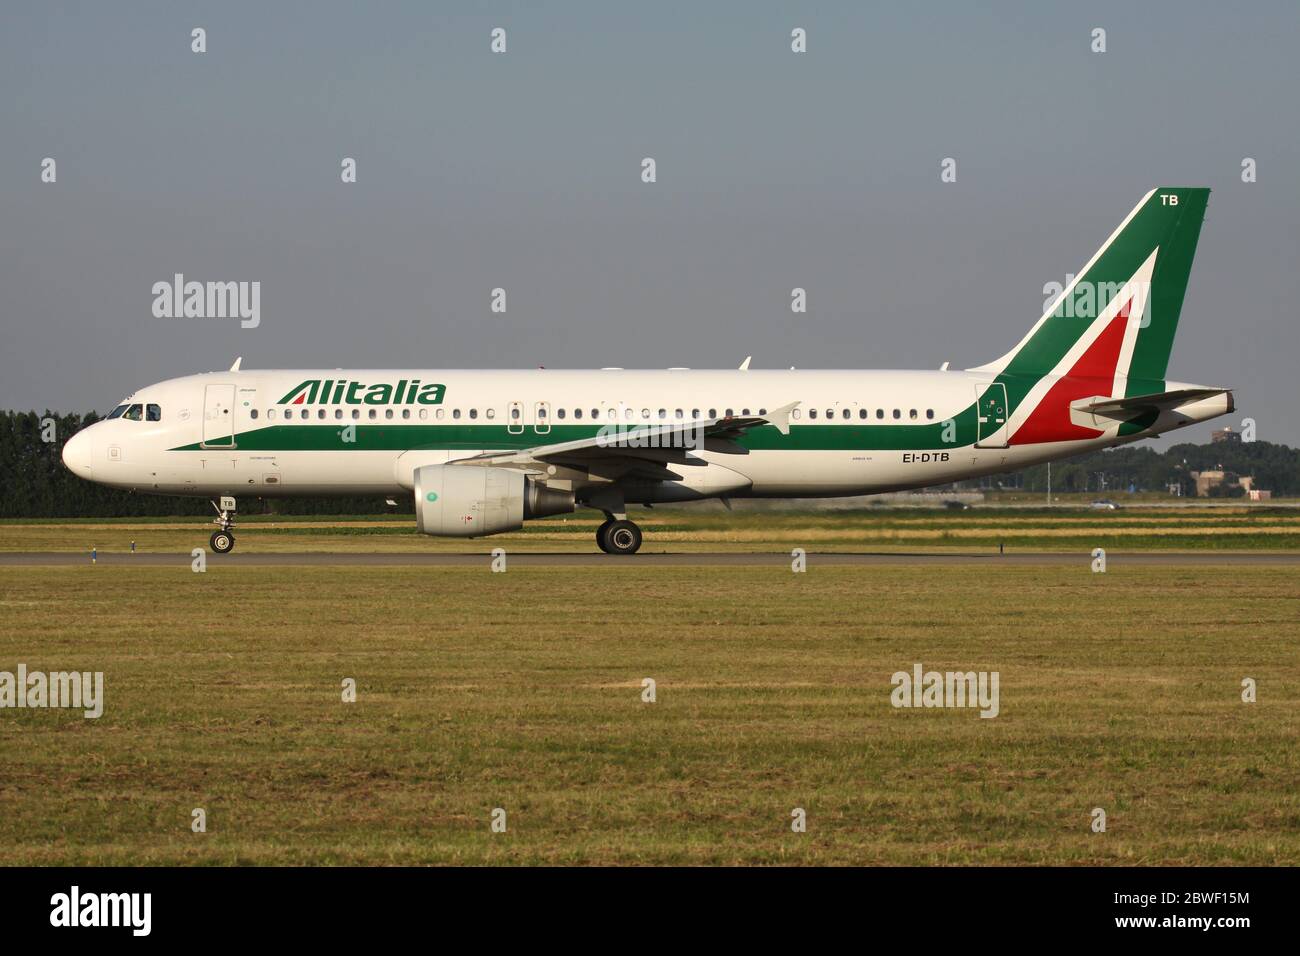 Airbus A320-200 Alitalia italien avec enregistrement EI-DTB roulant sur le taxi V de l'aéroport d'Amsterdam Schiphol. Banque D'Images